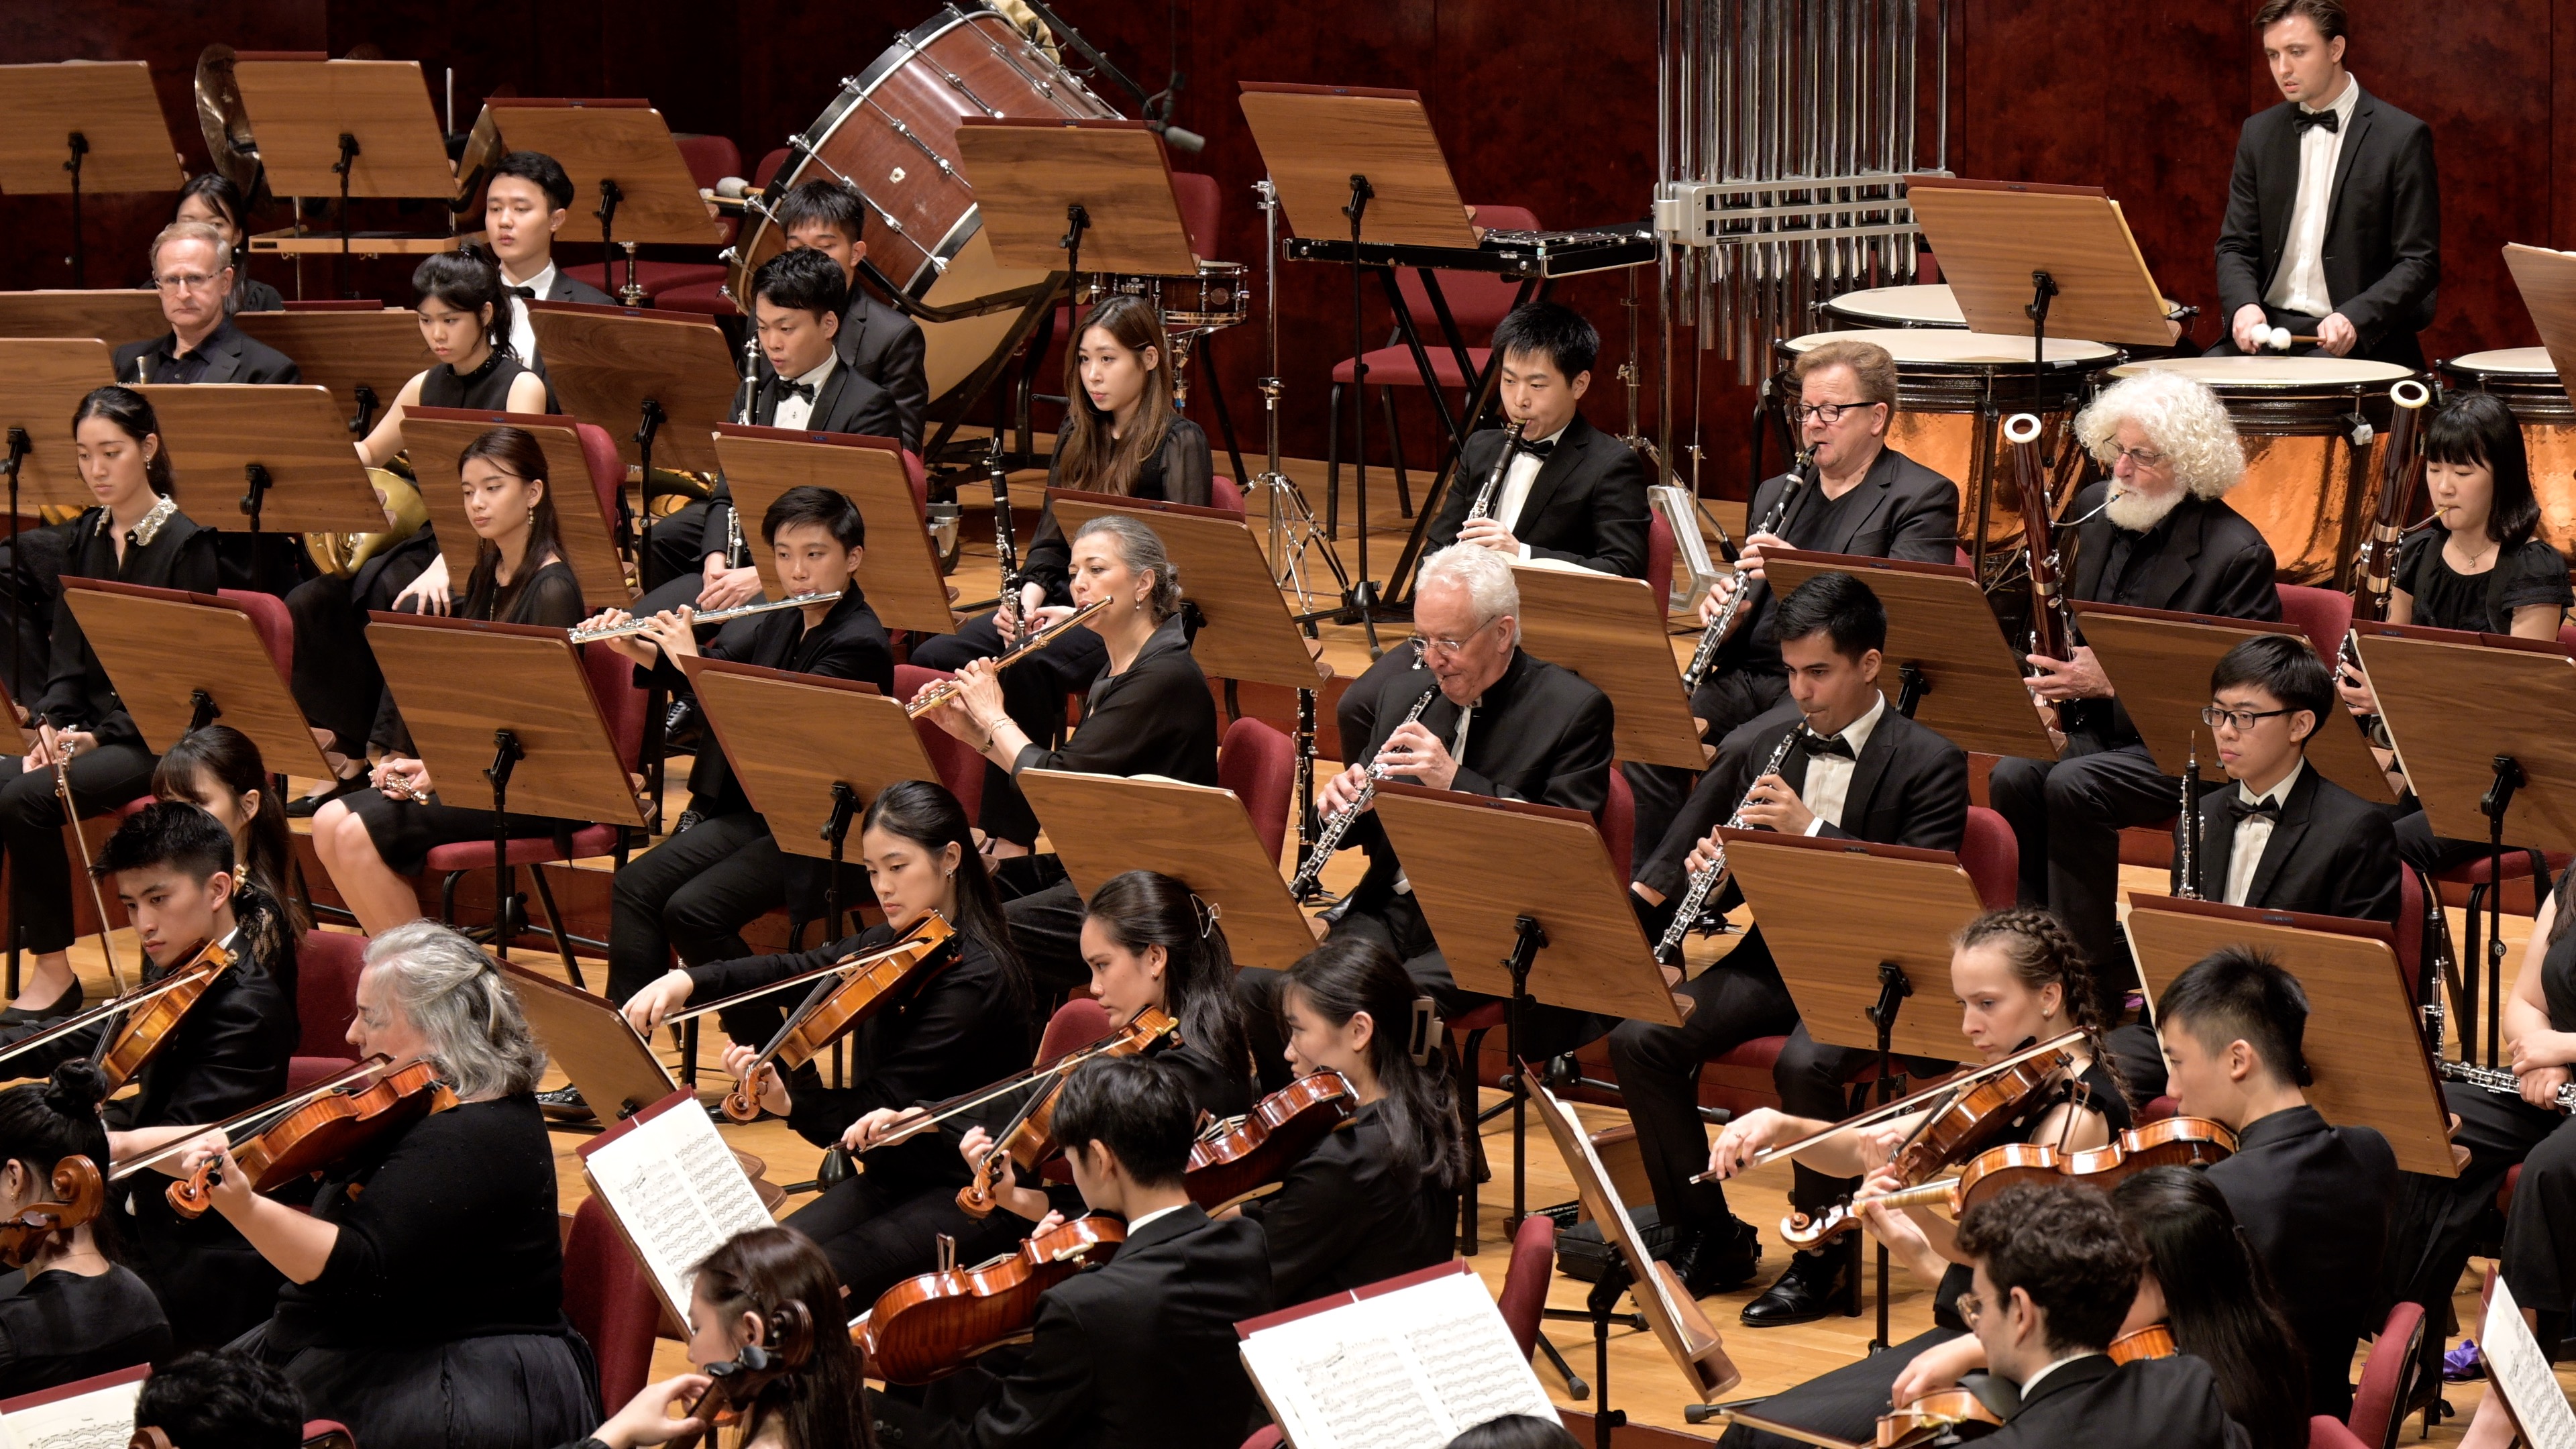 2022 TMAF Orchestra Concert on National Concert Hall